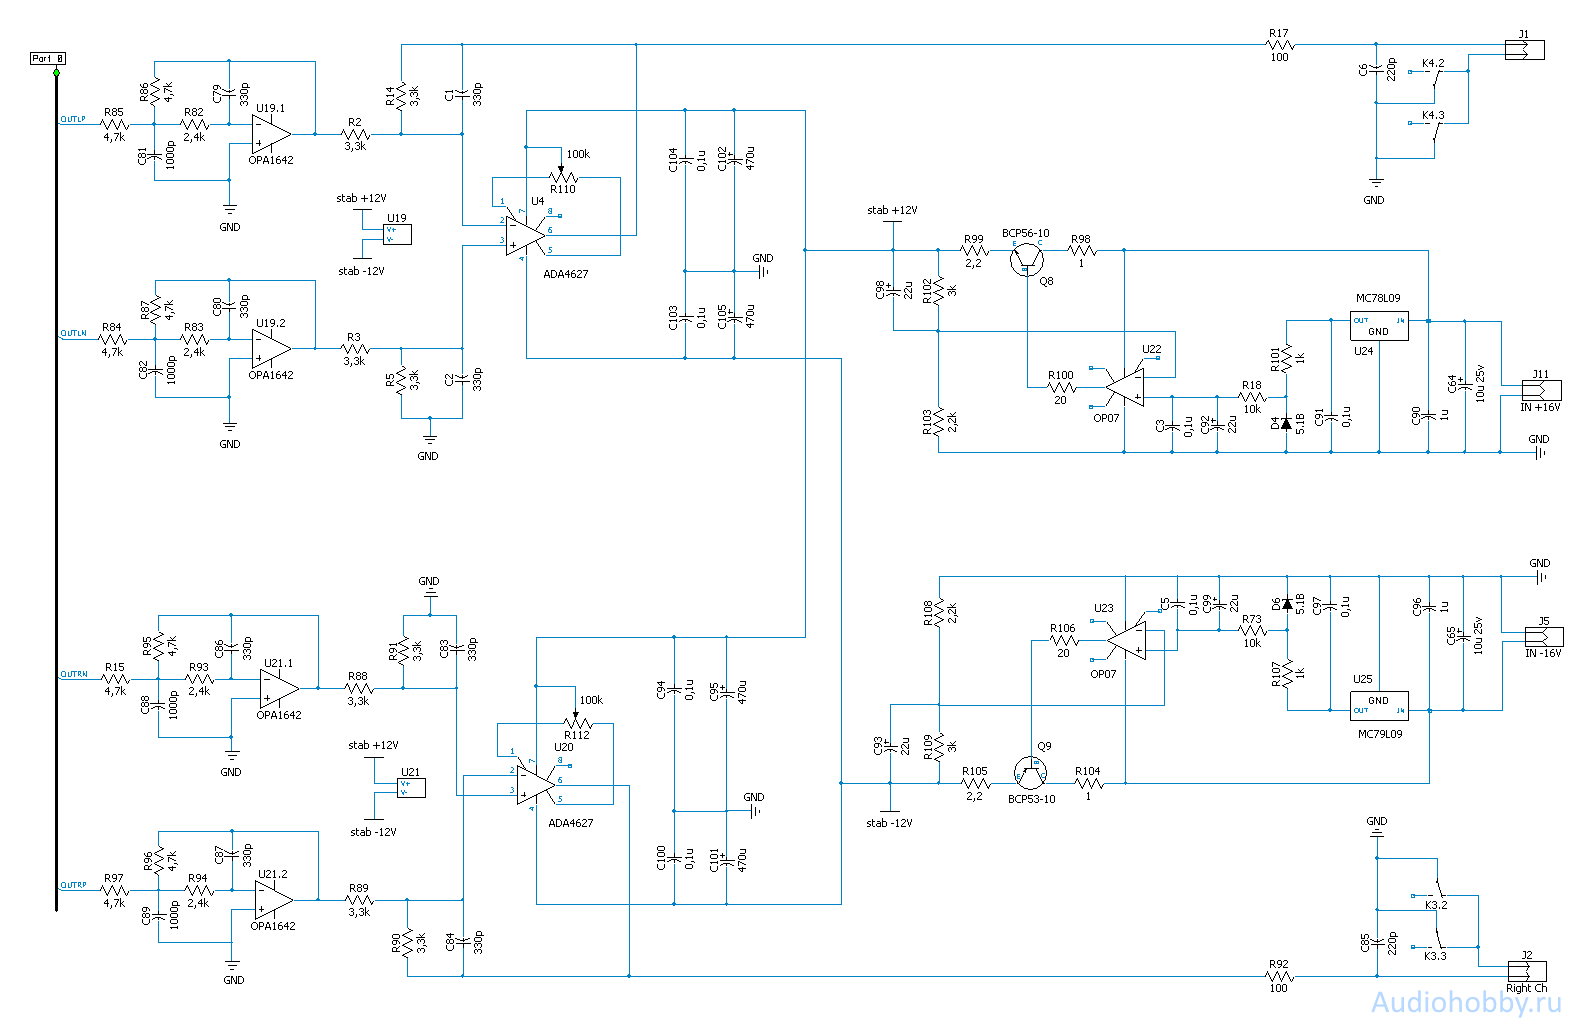 Схема фильтра ЦАП AH-D5 на ak4490